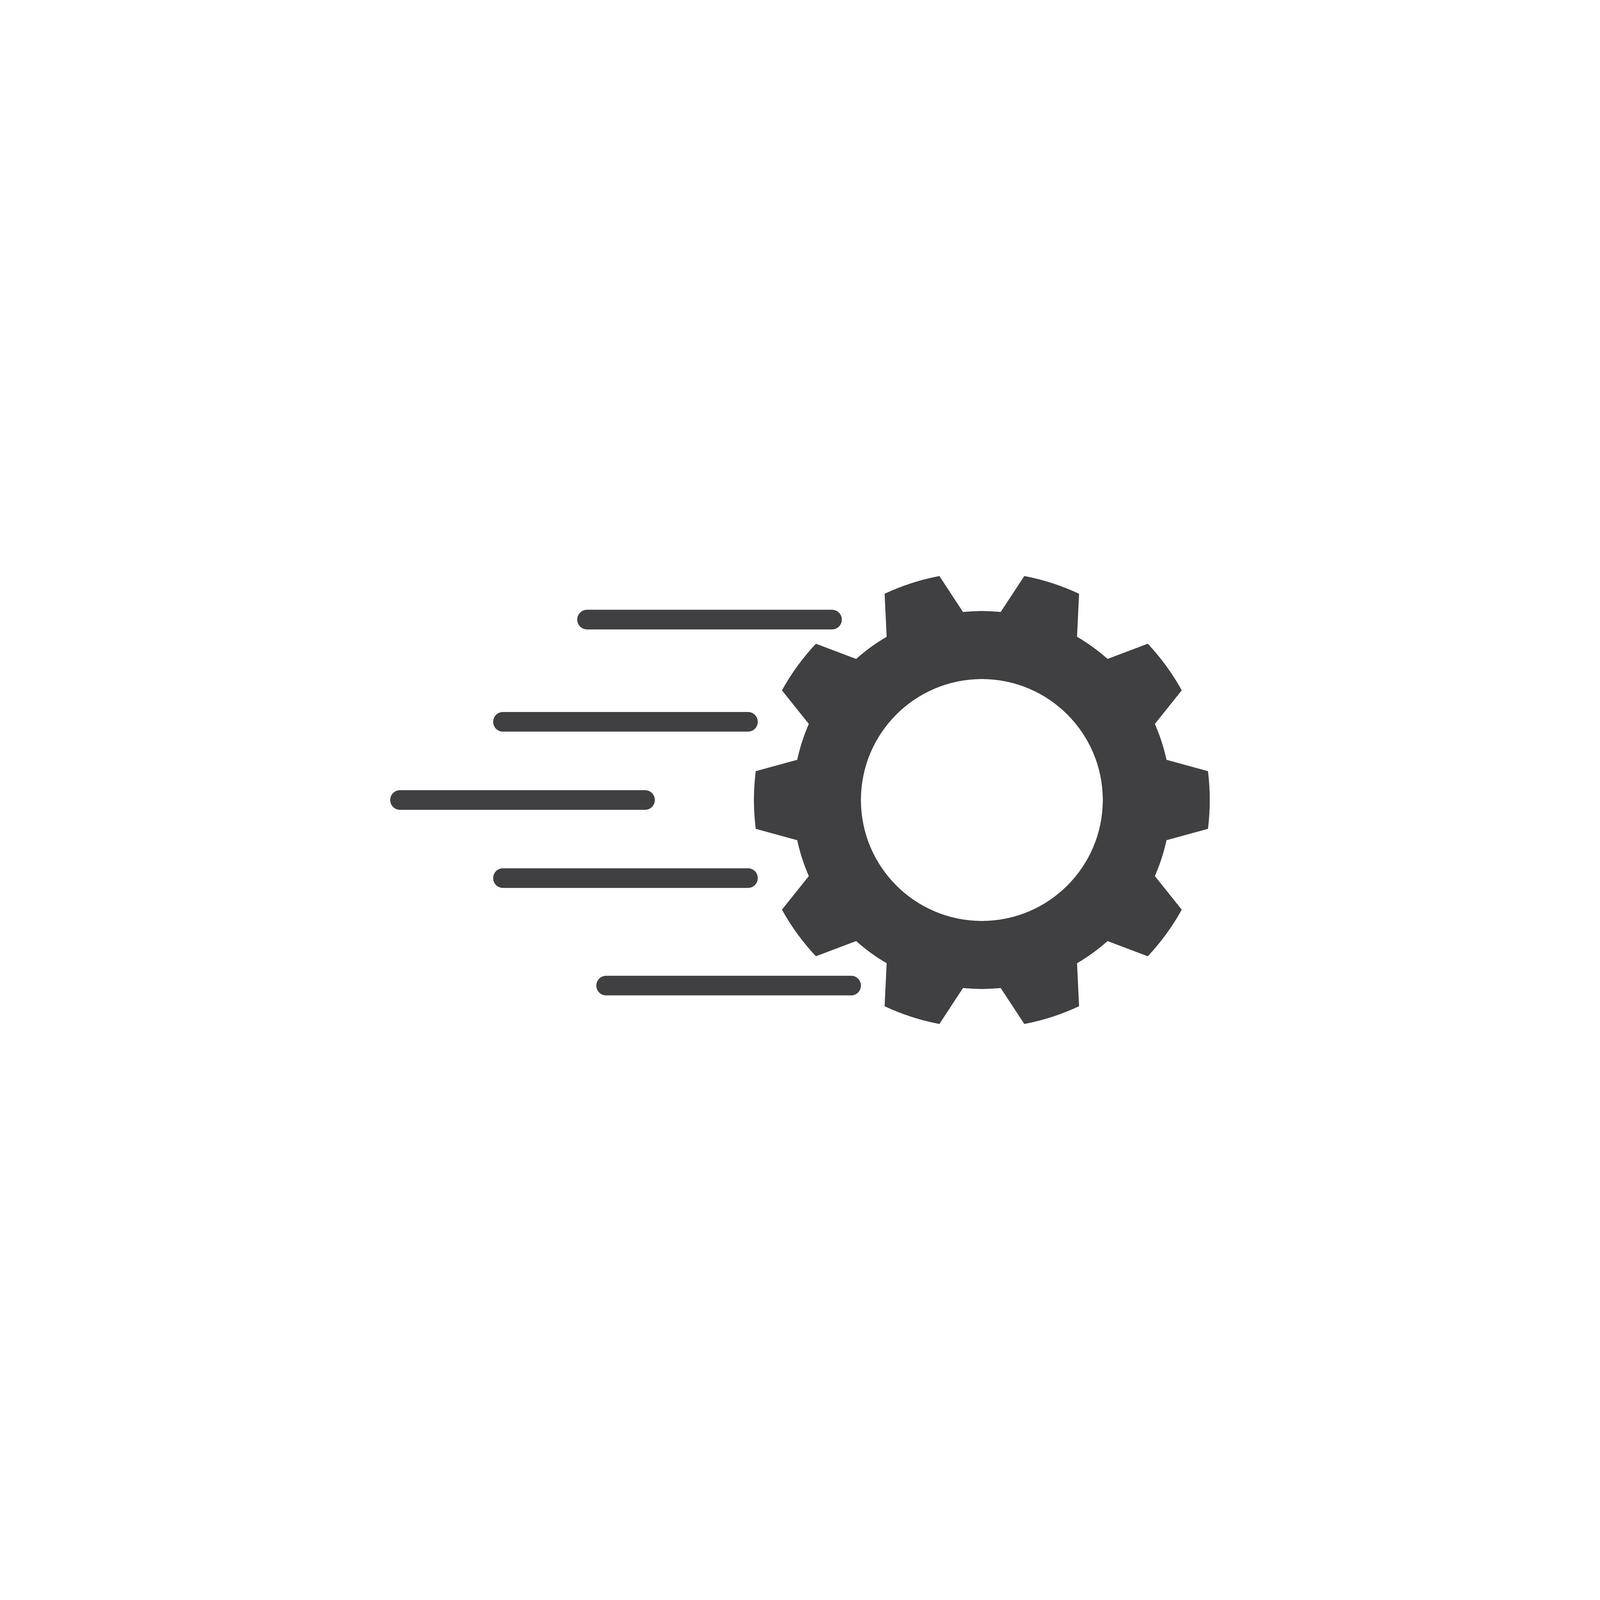 Gear logo vector illustration design